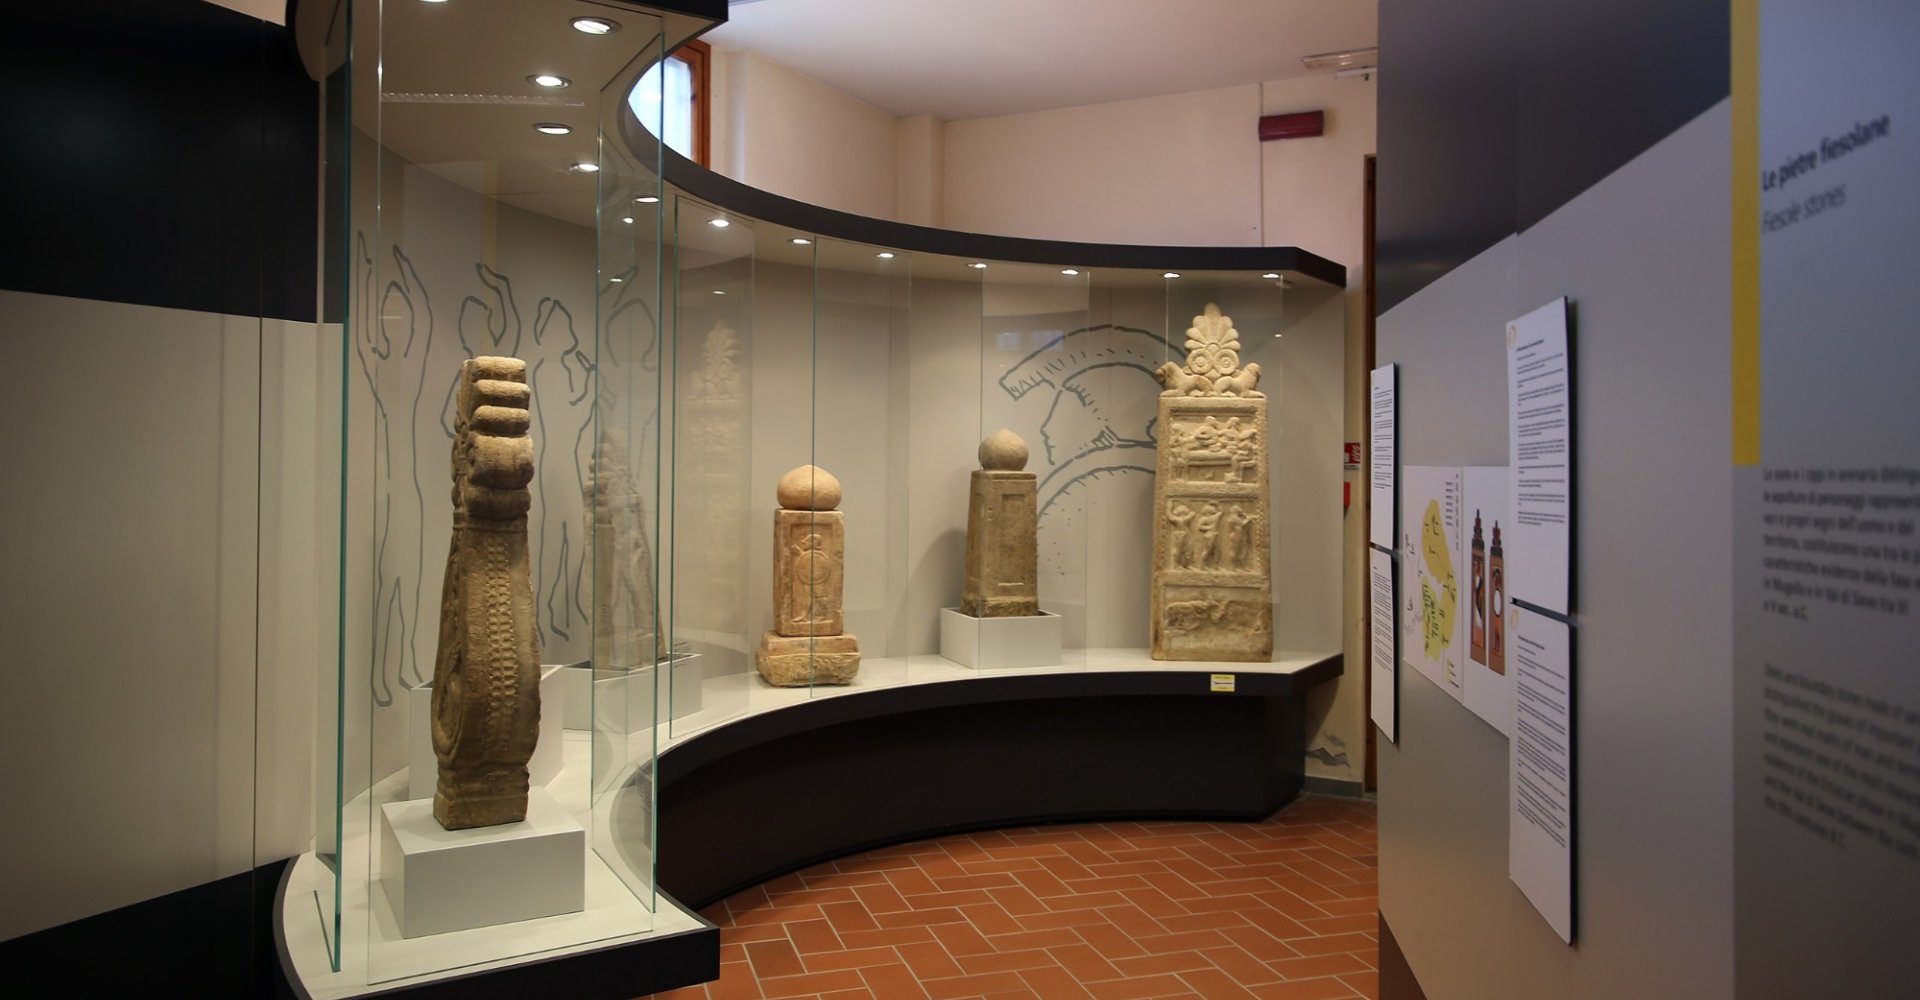 Archäologisches Museum in Dicomano